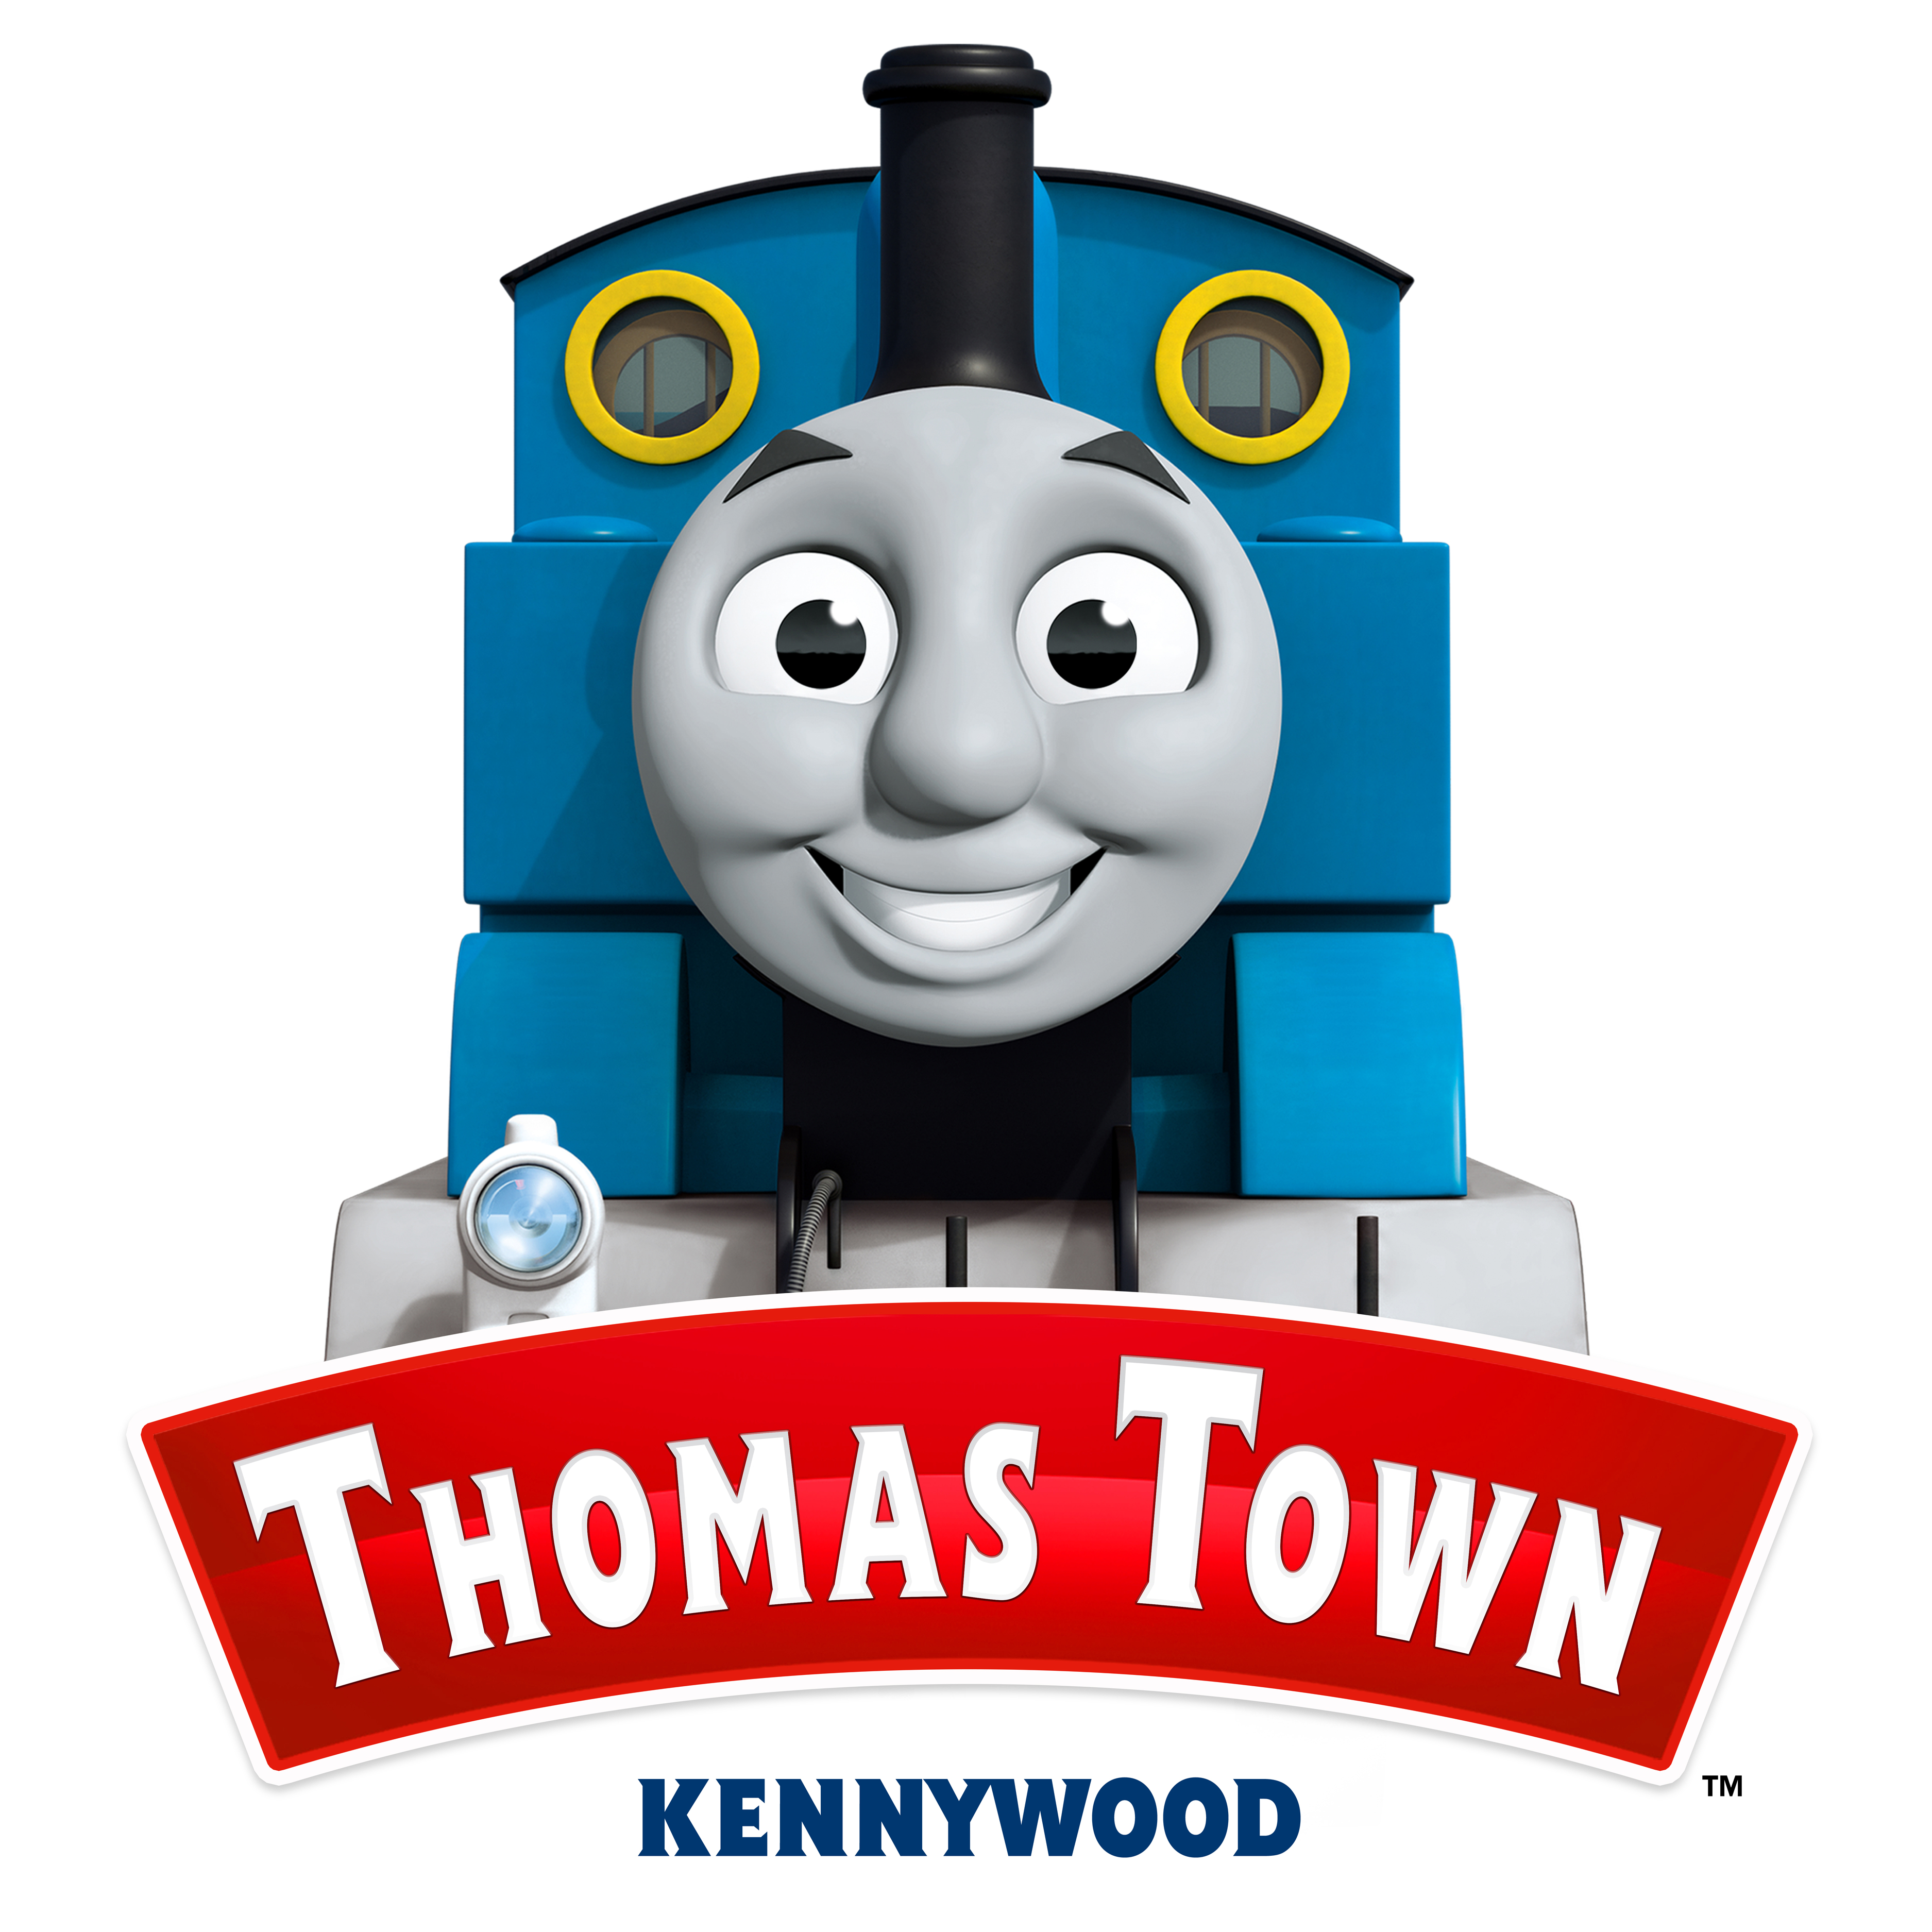 Thomas Town at Kennywood | Thomas the Tank Engine Wikia | Fandom